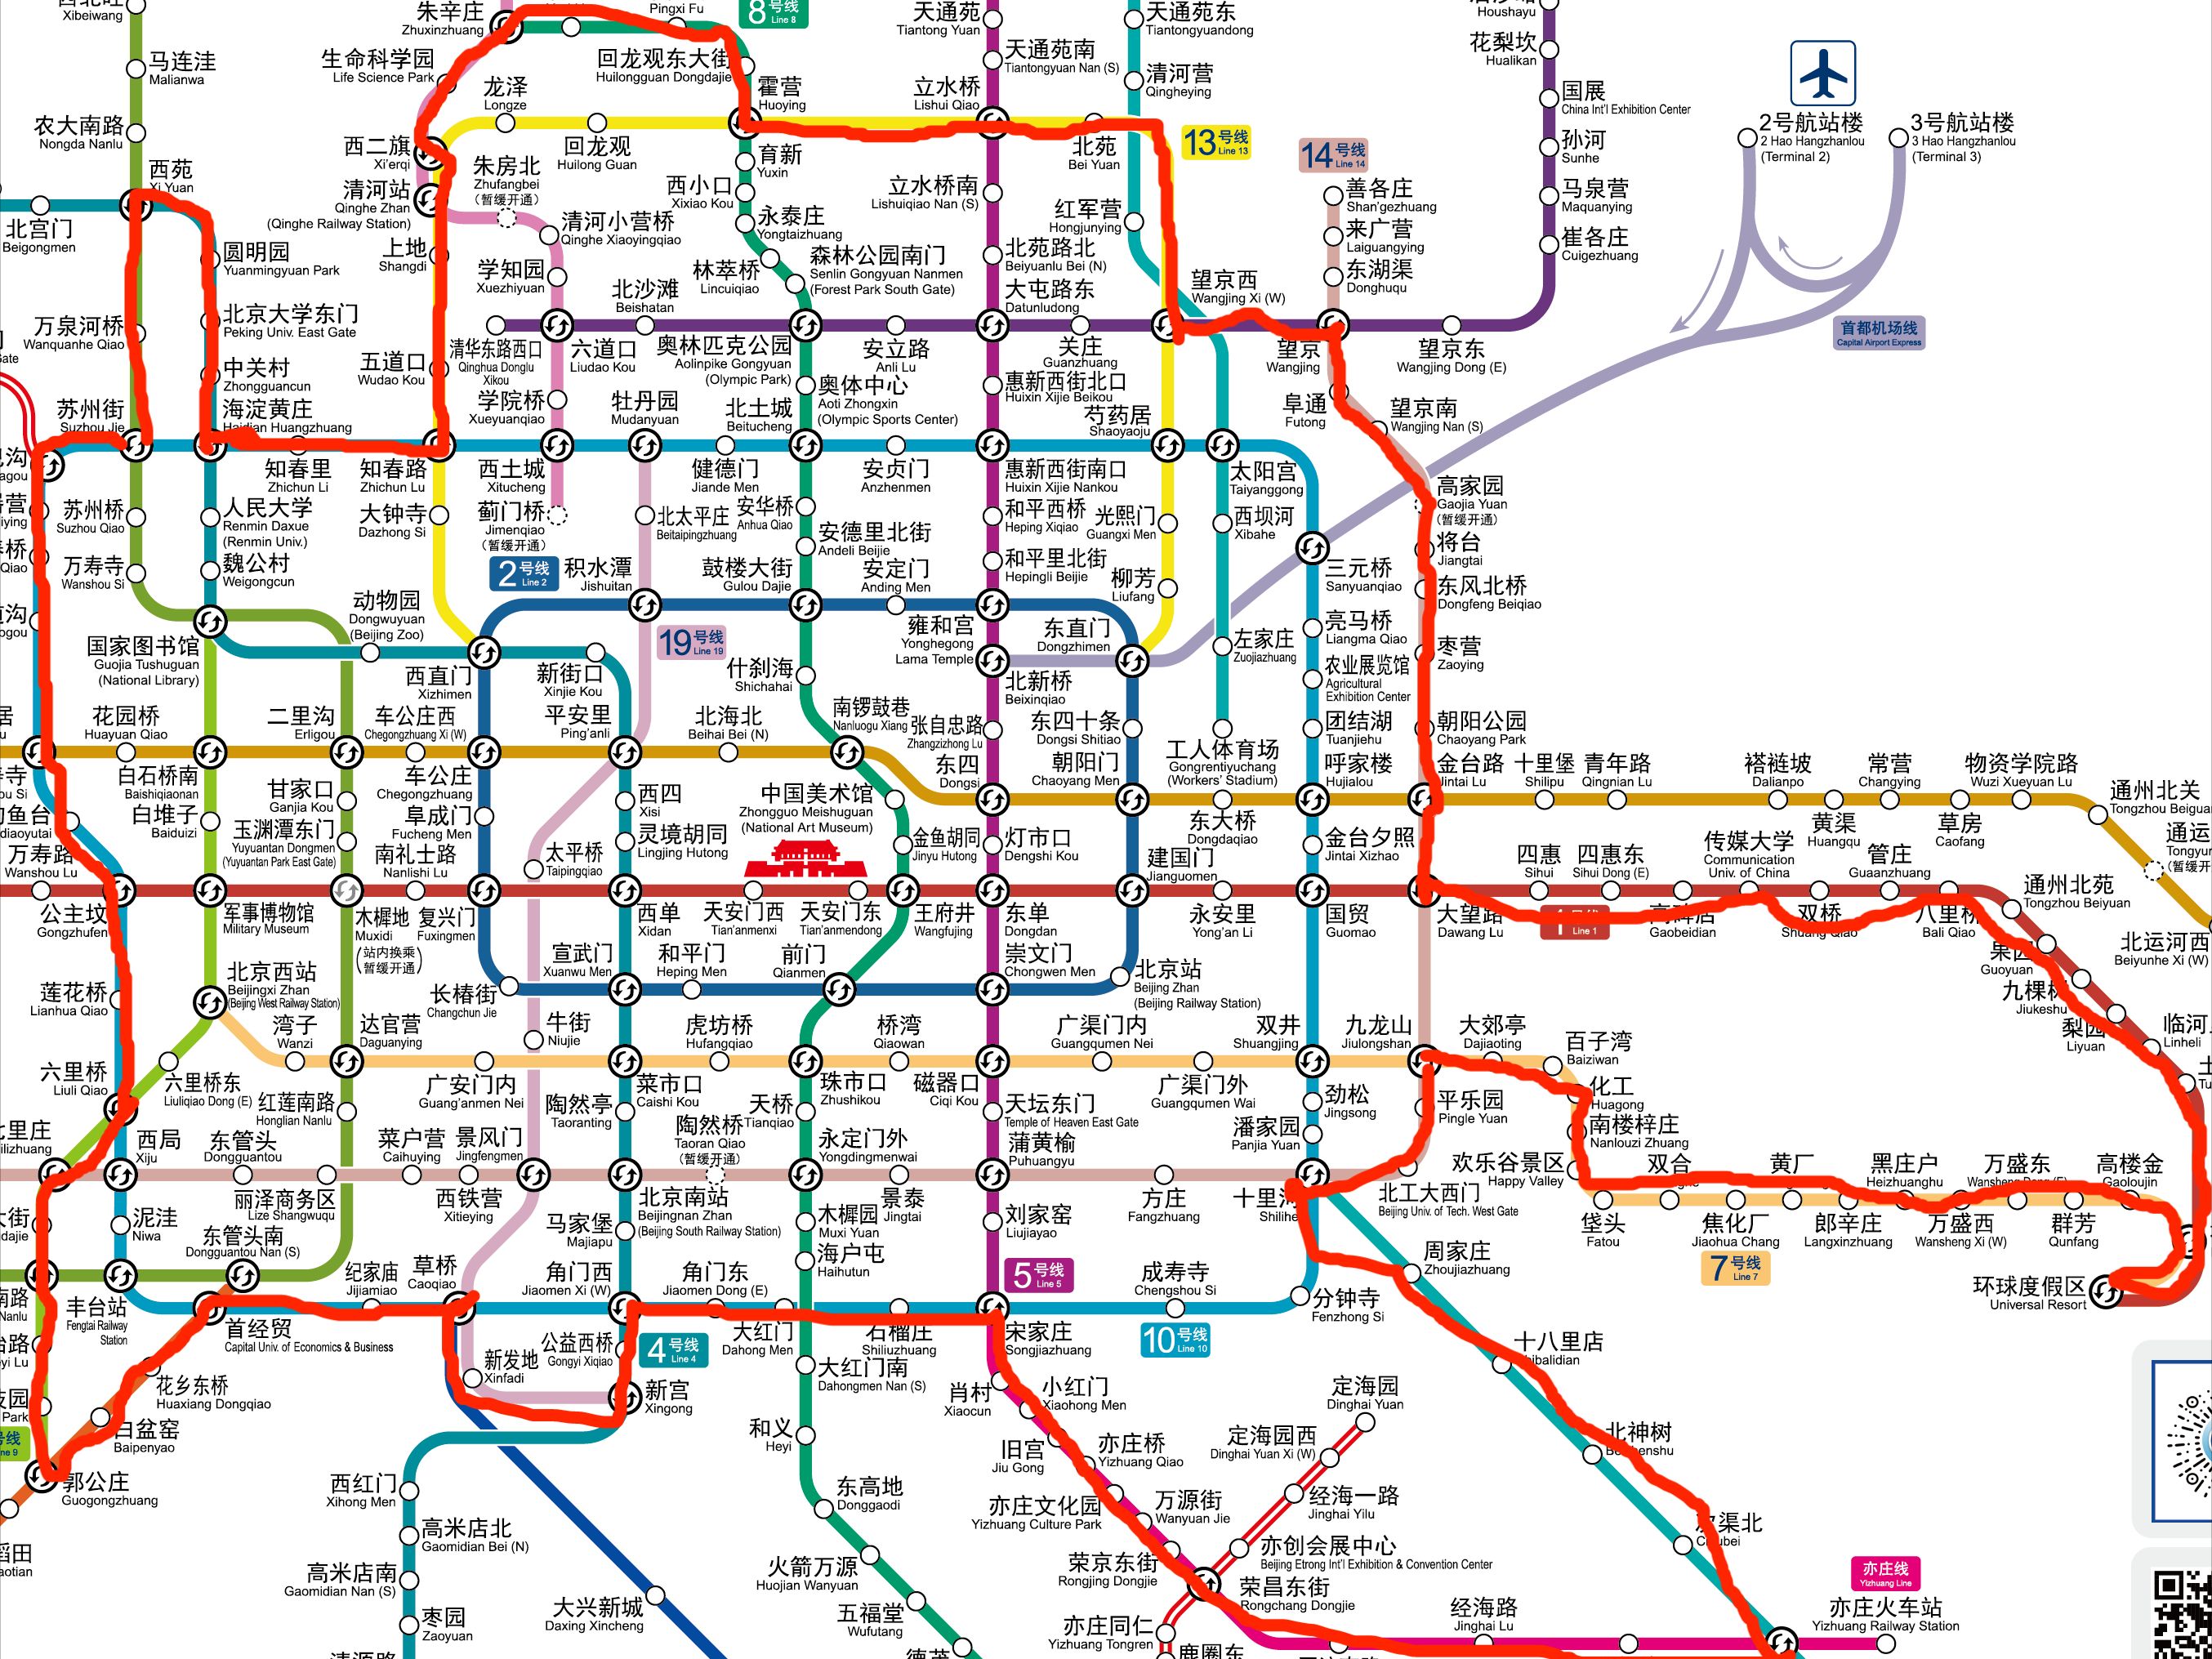 北京地铁区域划分图图片